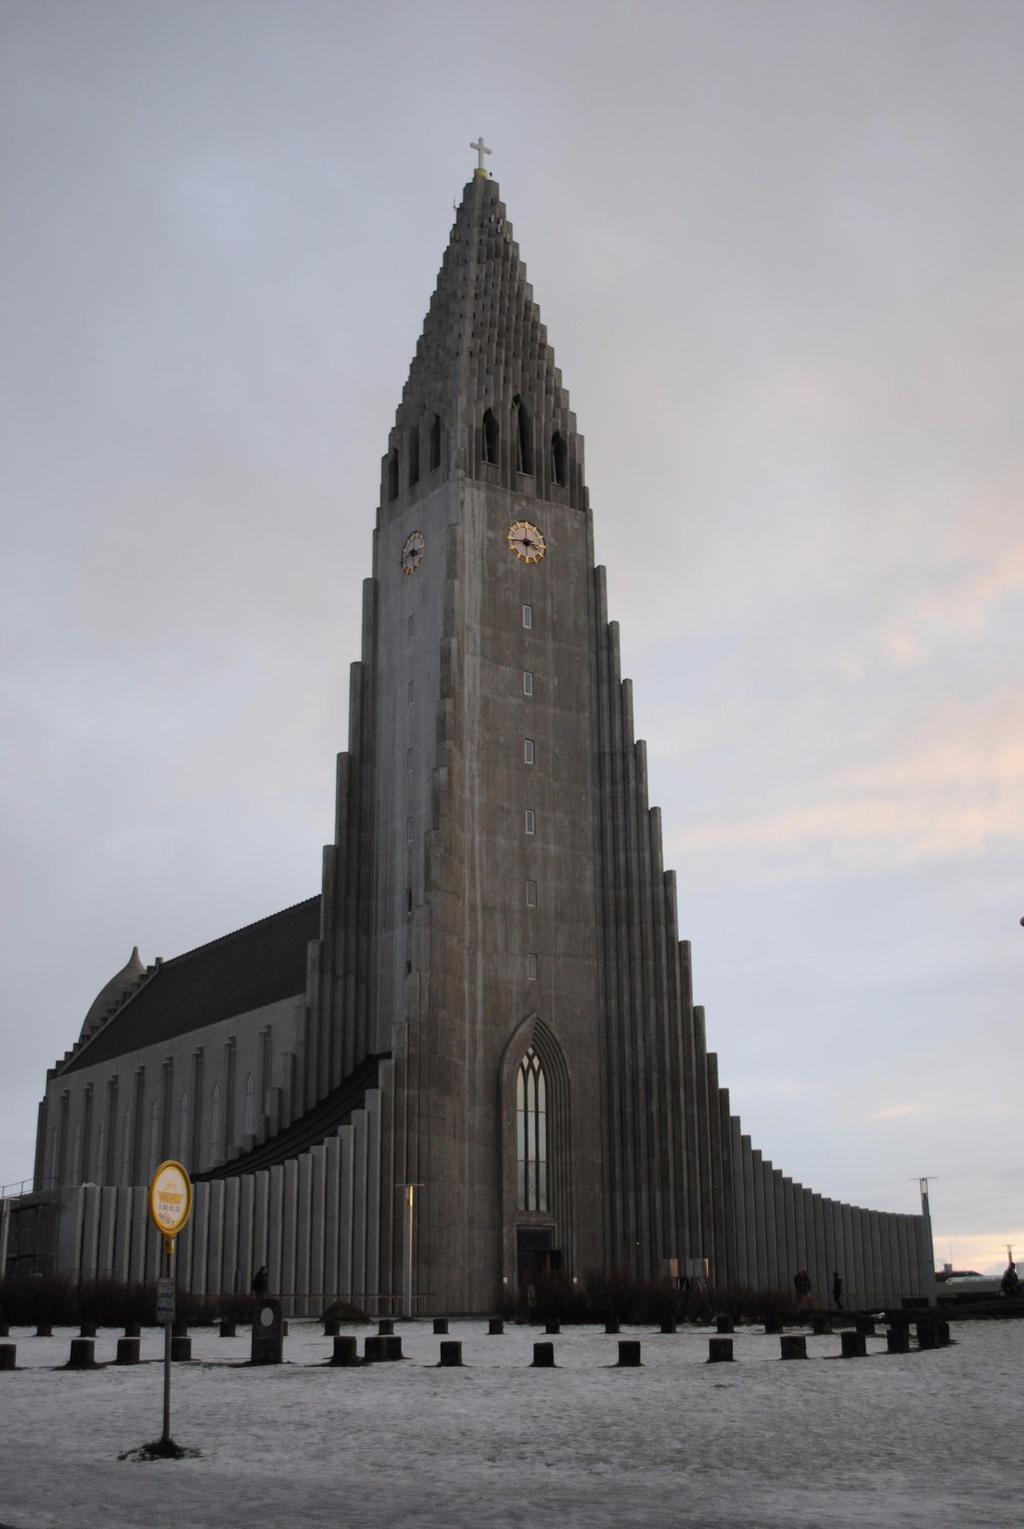 Hallgrímskirkja Church, Iceland